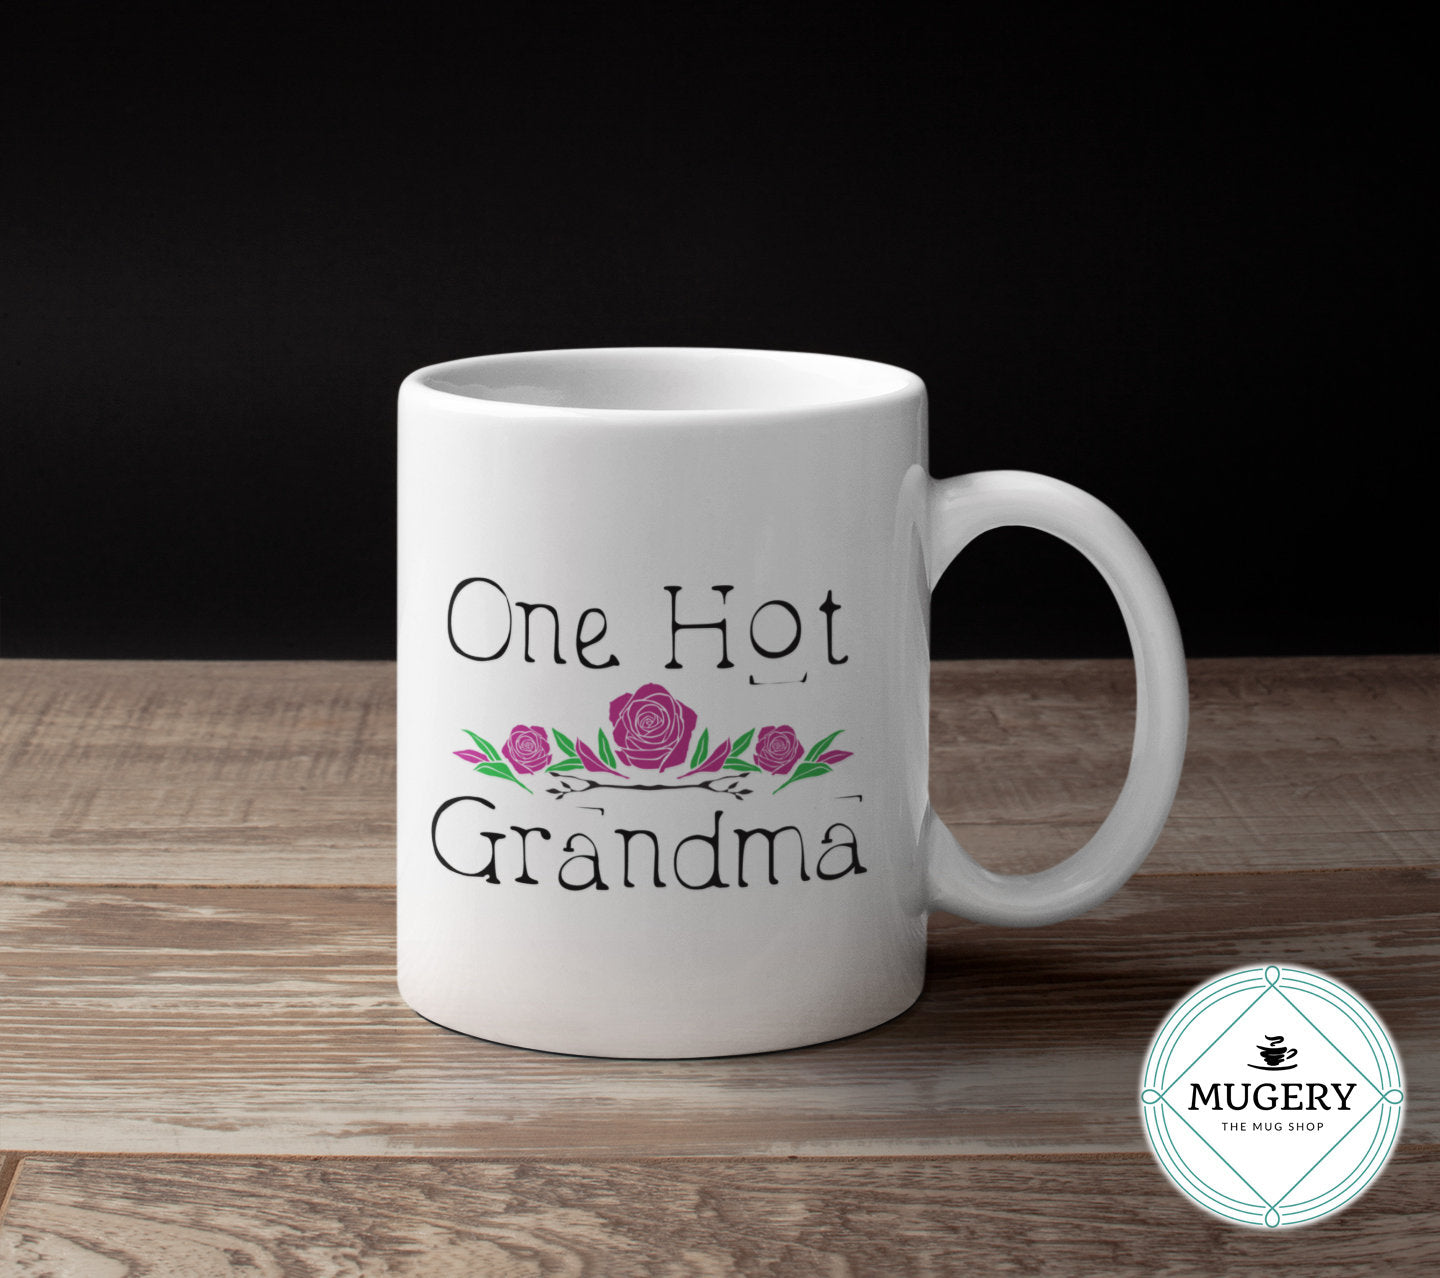 One Hot Grandma Mug